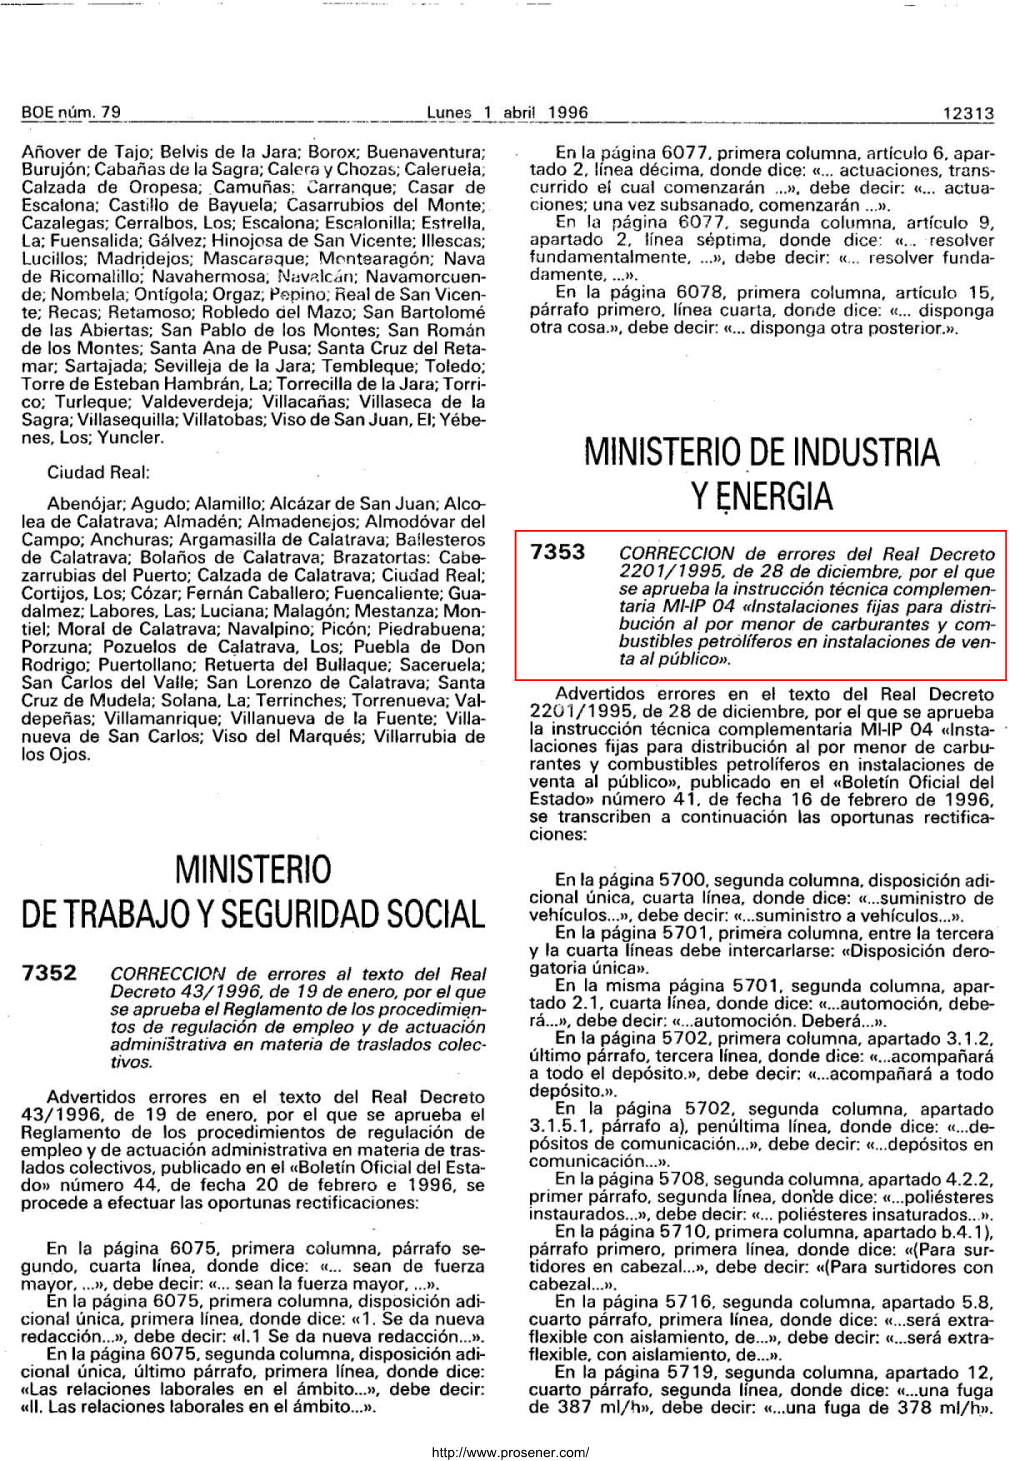 Corrección De Errores Del Real Decreto 2201/1995